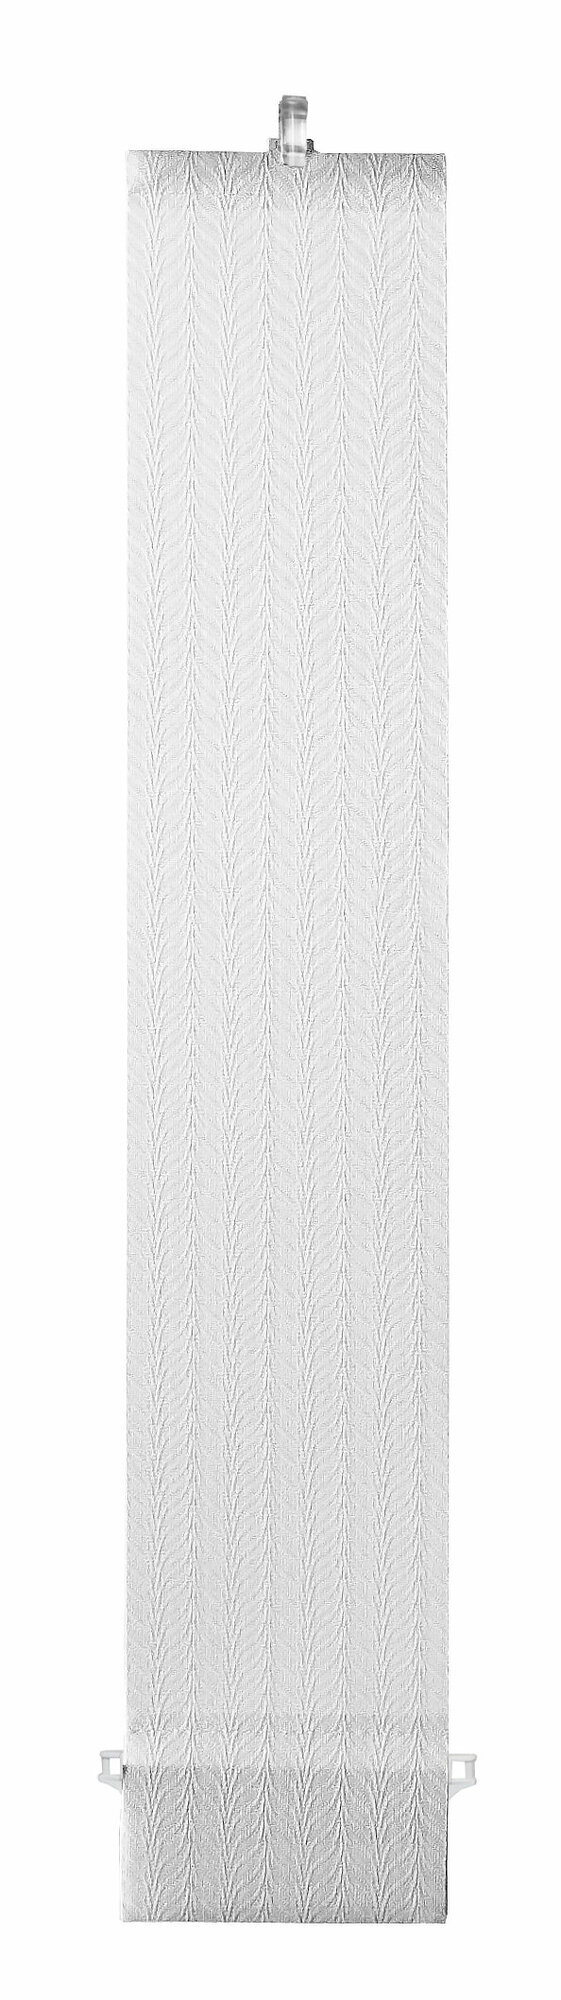 Ламели для вертикальных жалюзи 5шт Магнолия белая Длина 180 см